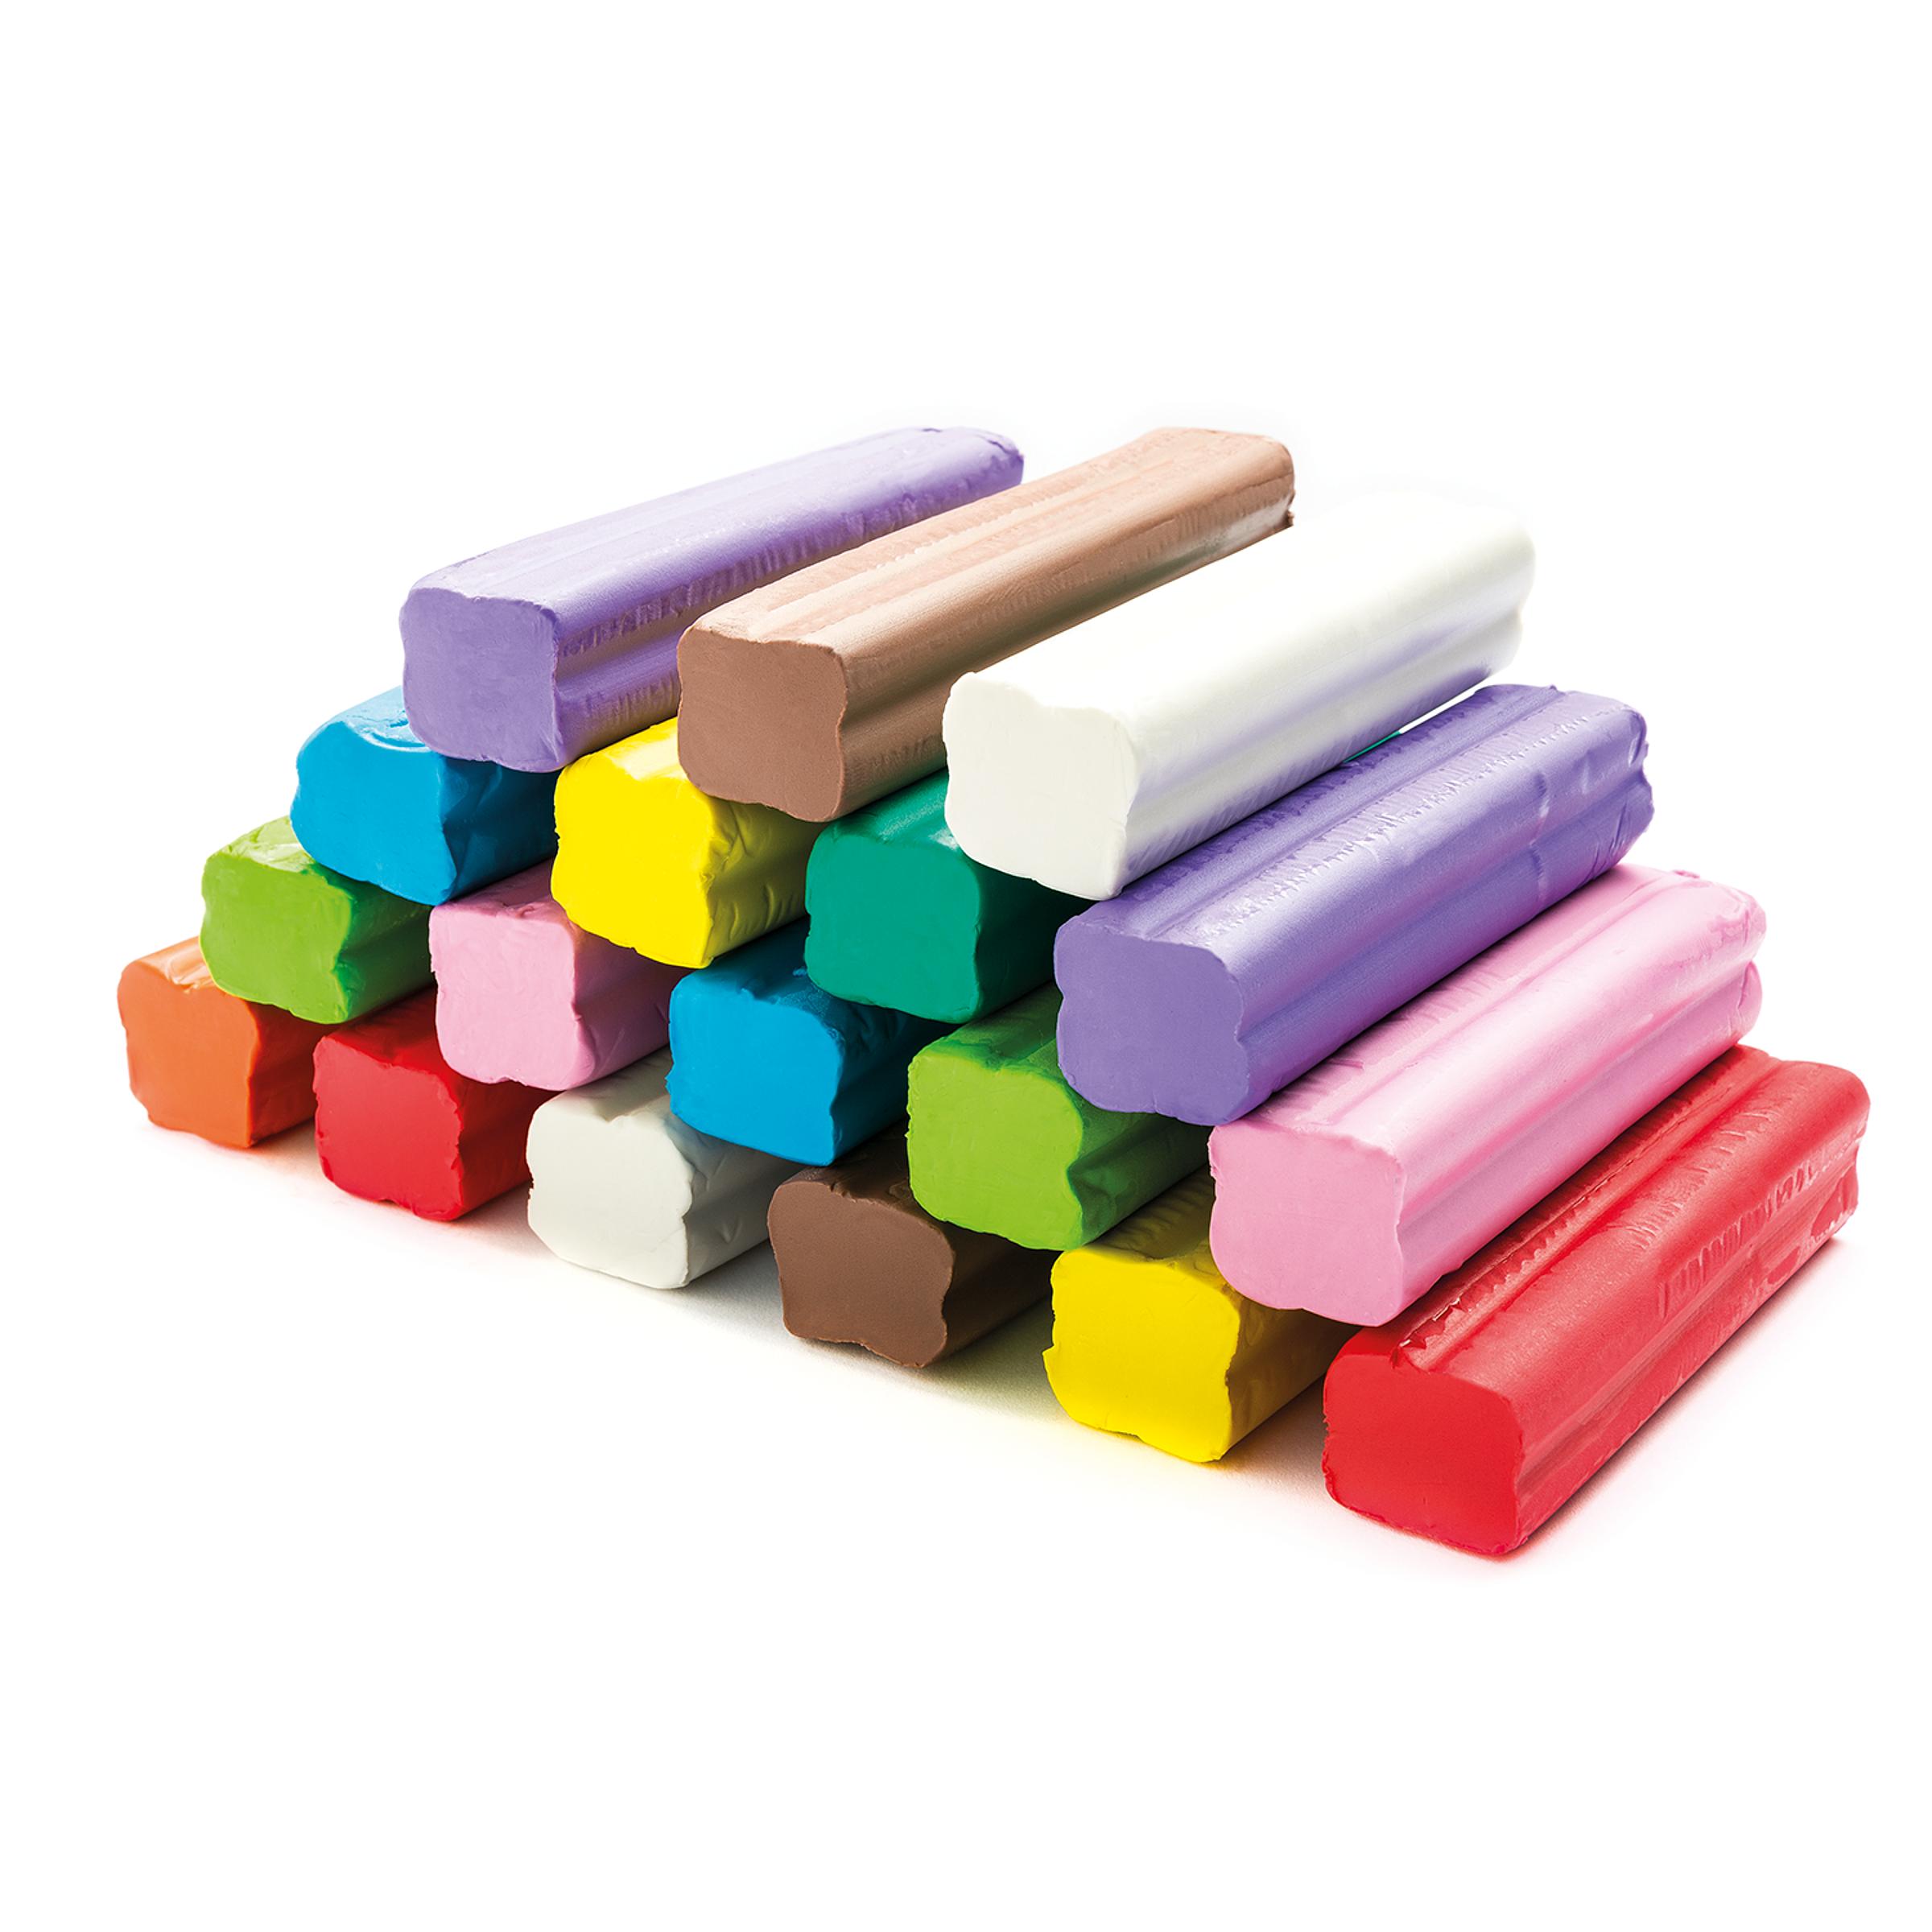 Knete Knetmasse Modeliermasse im Beutel 12 Farben Mitgebsel Spielknete 